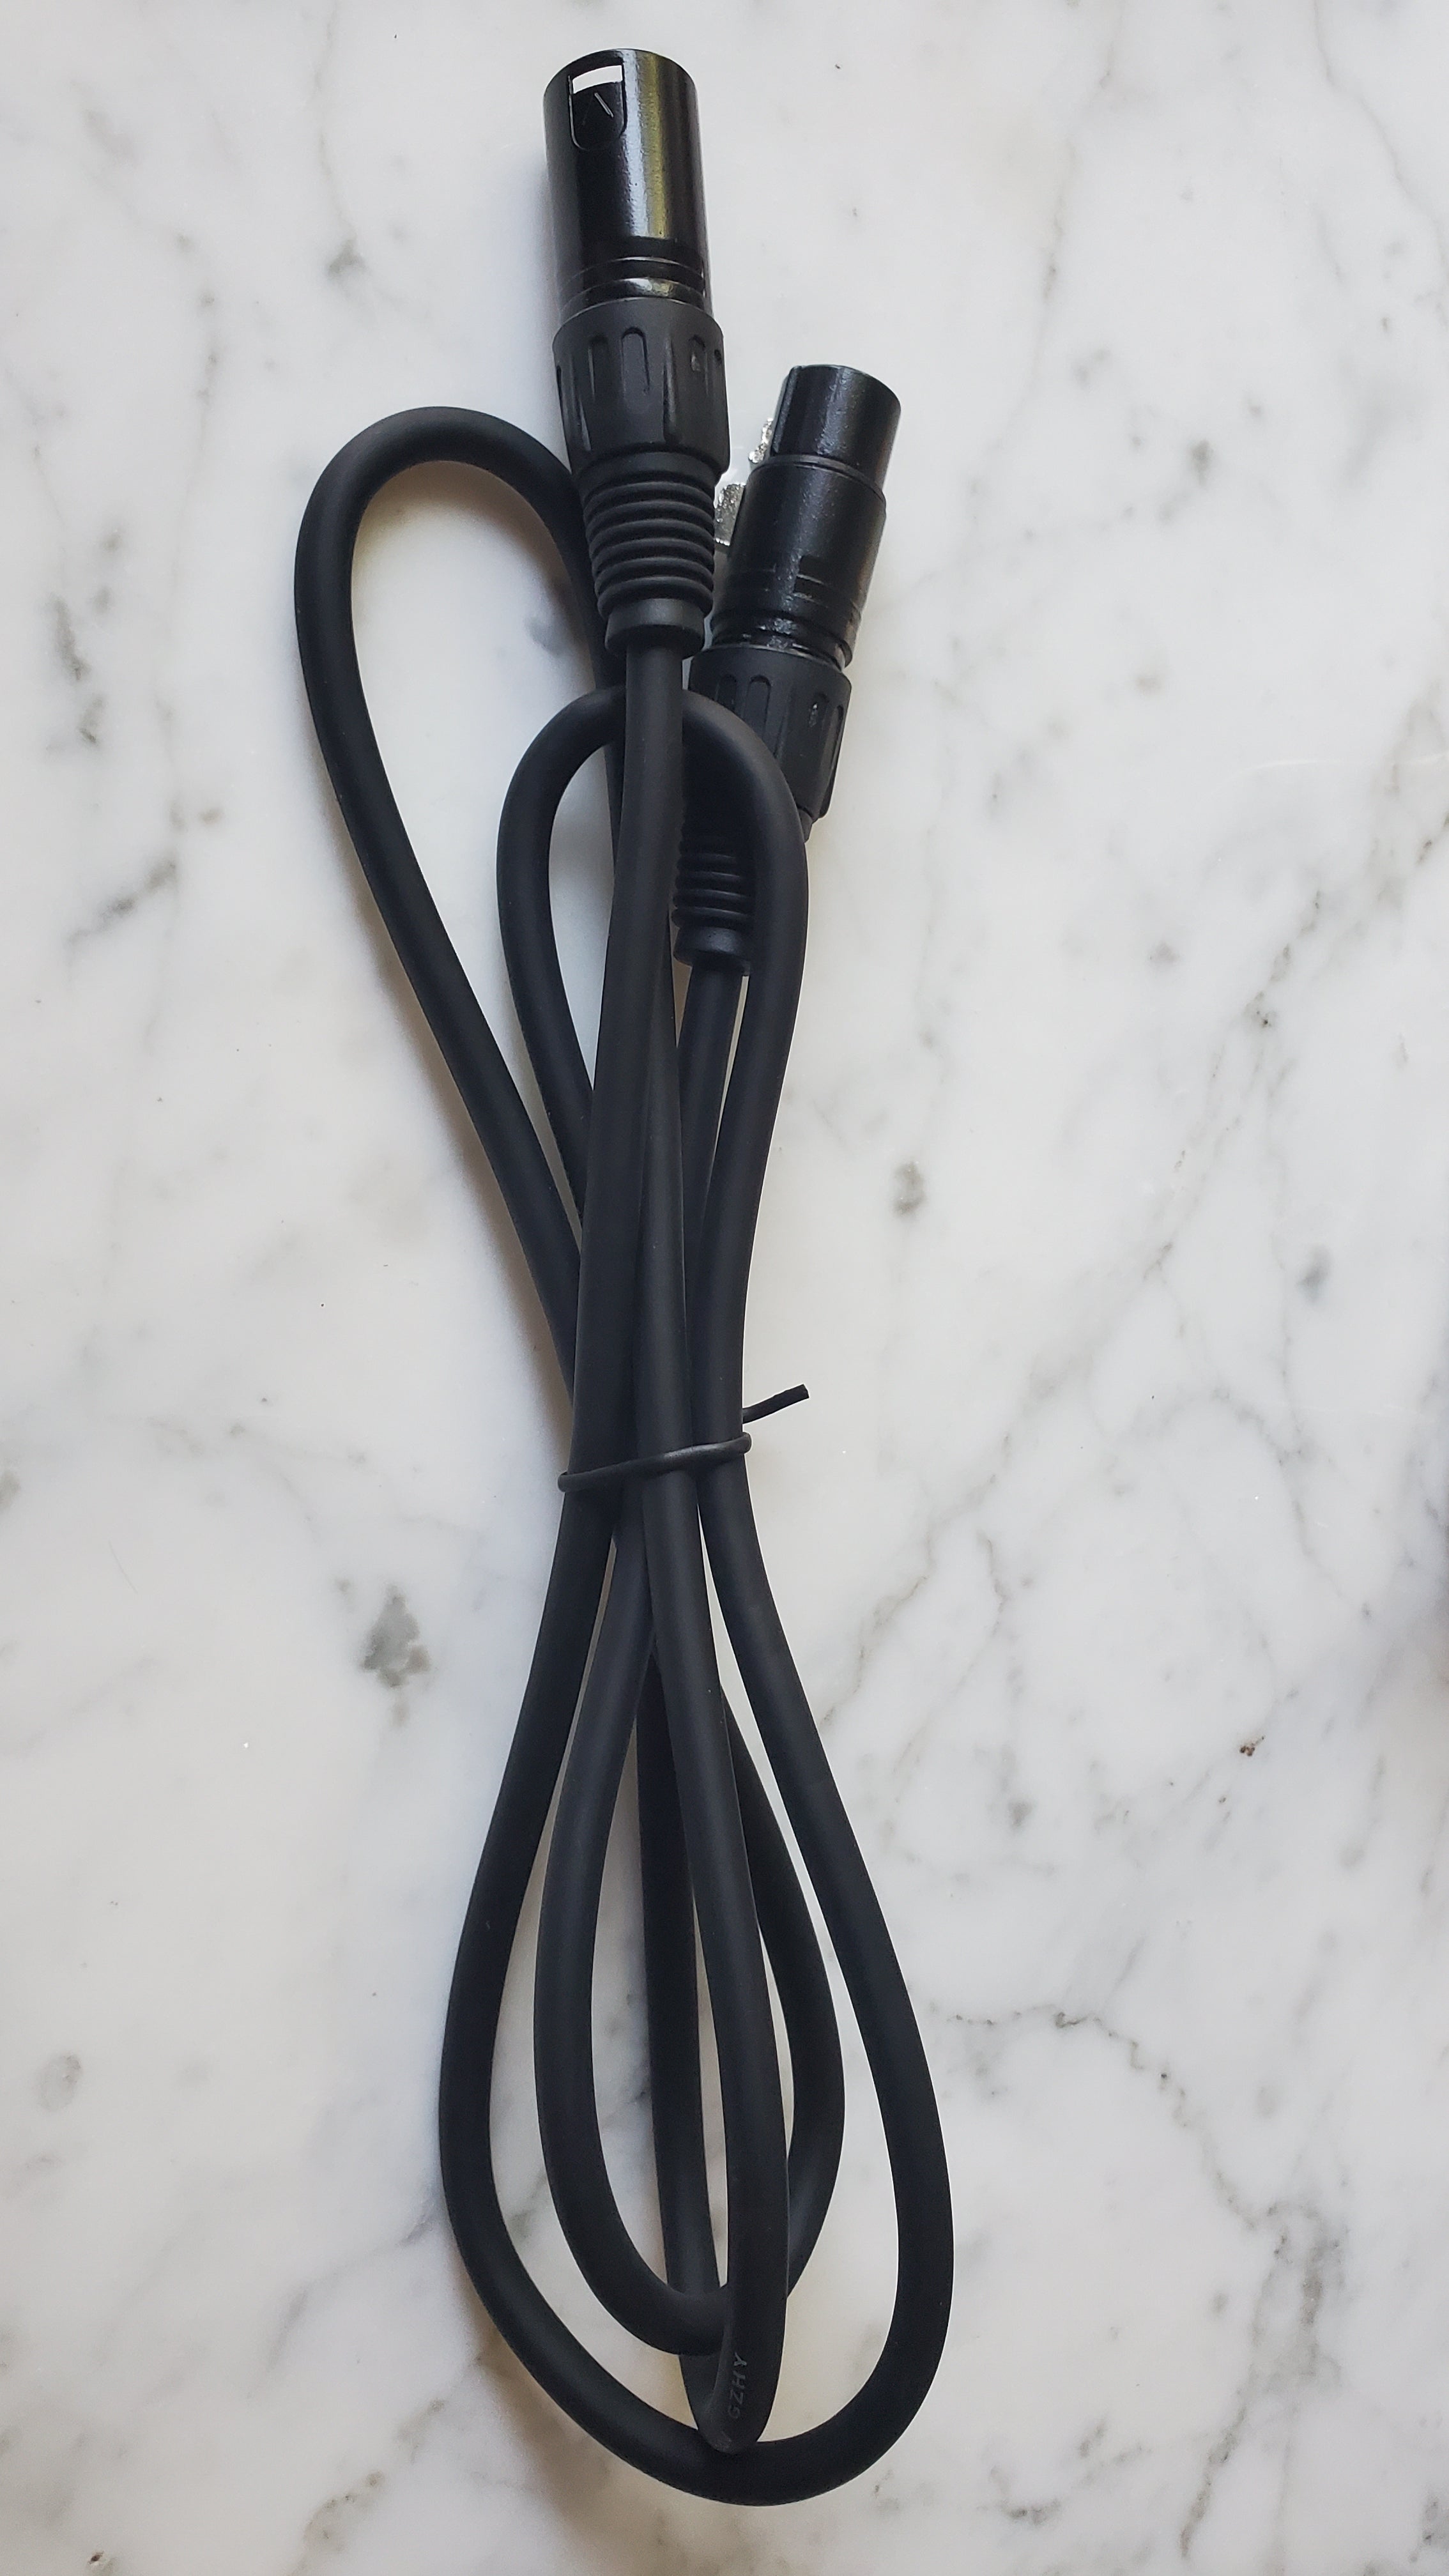 4x 3-Pin DMX Cable bundle, 5 foot each